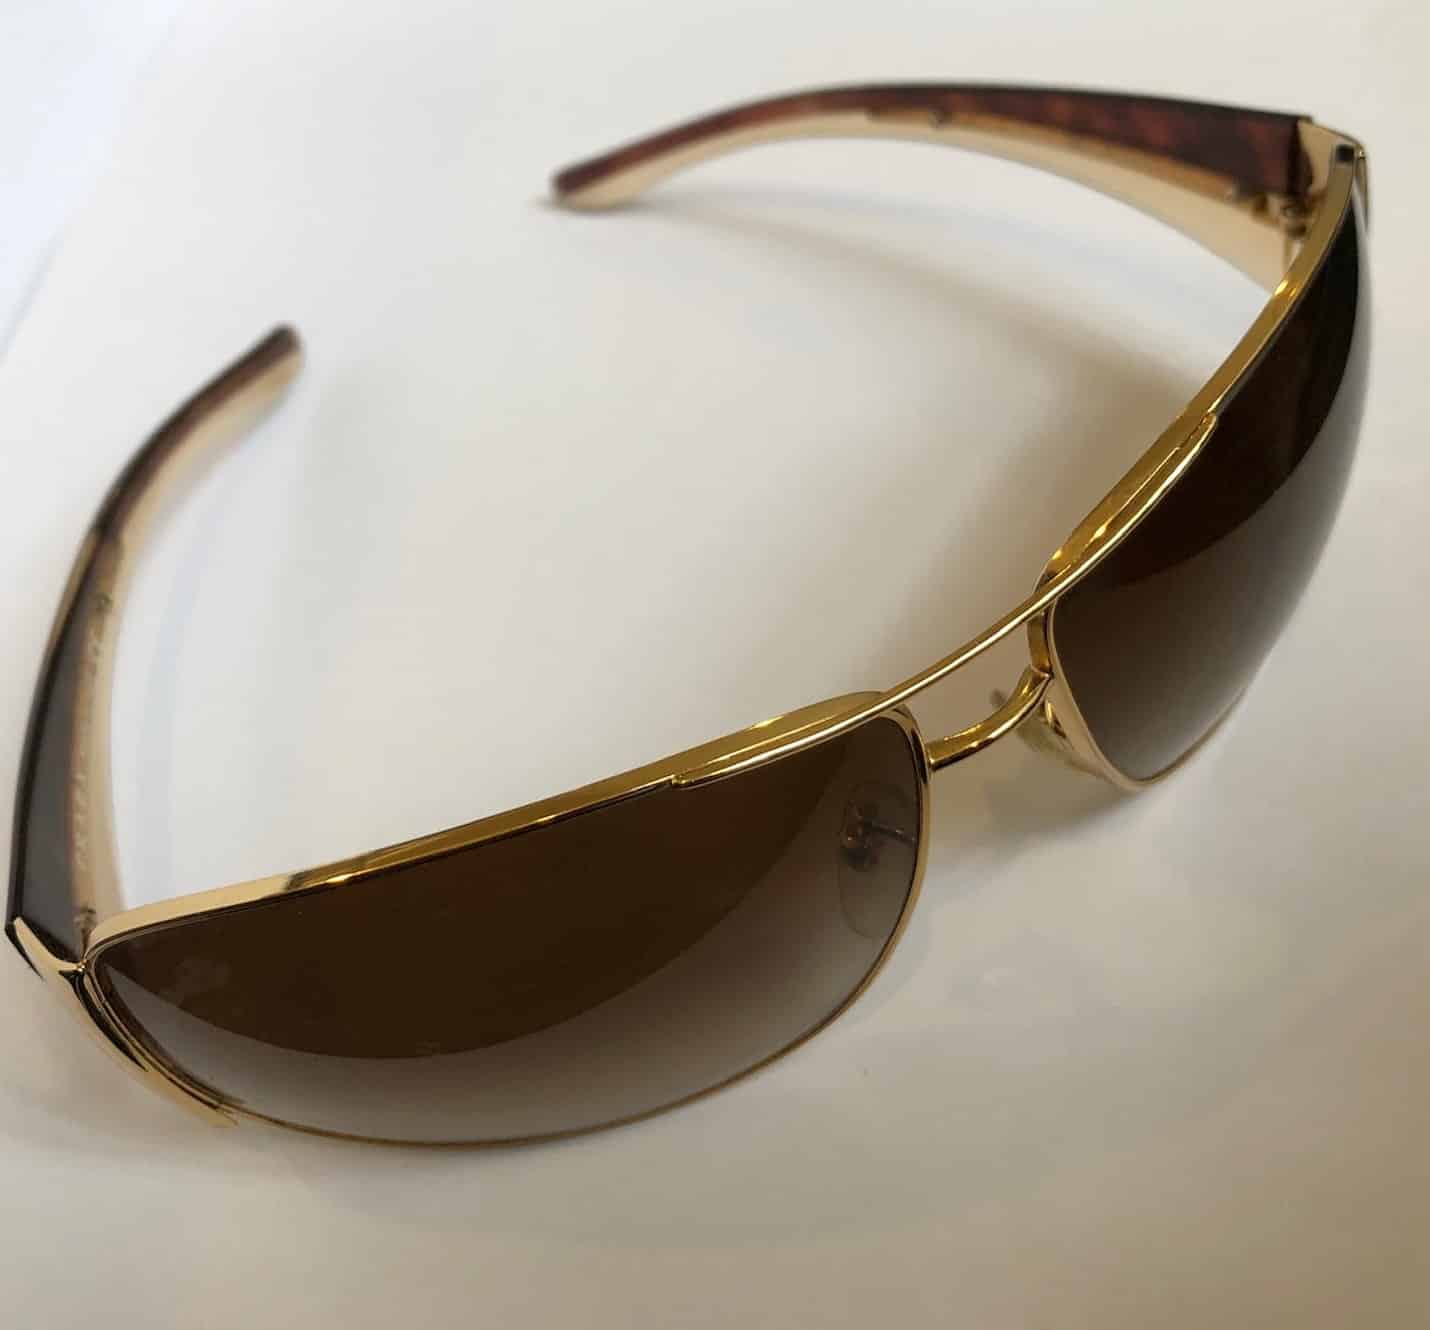 Buy Prada Aviator Sunglasses Green For Women Online @ Best Prices in India  | Flipkart.com